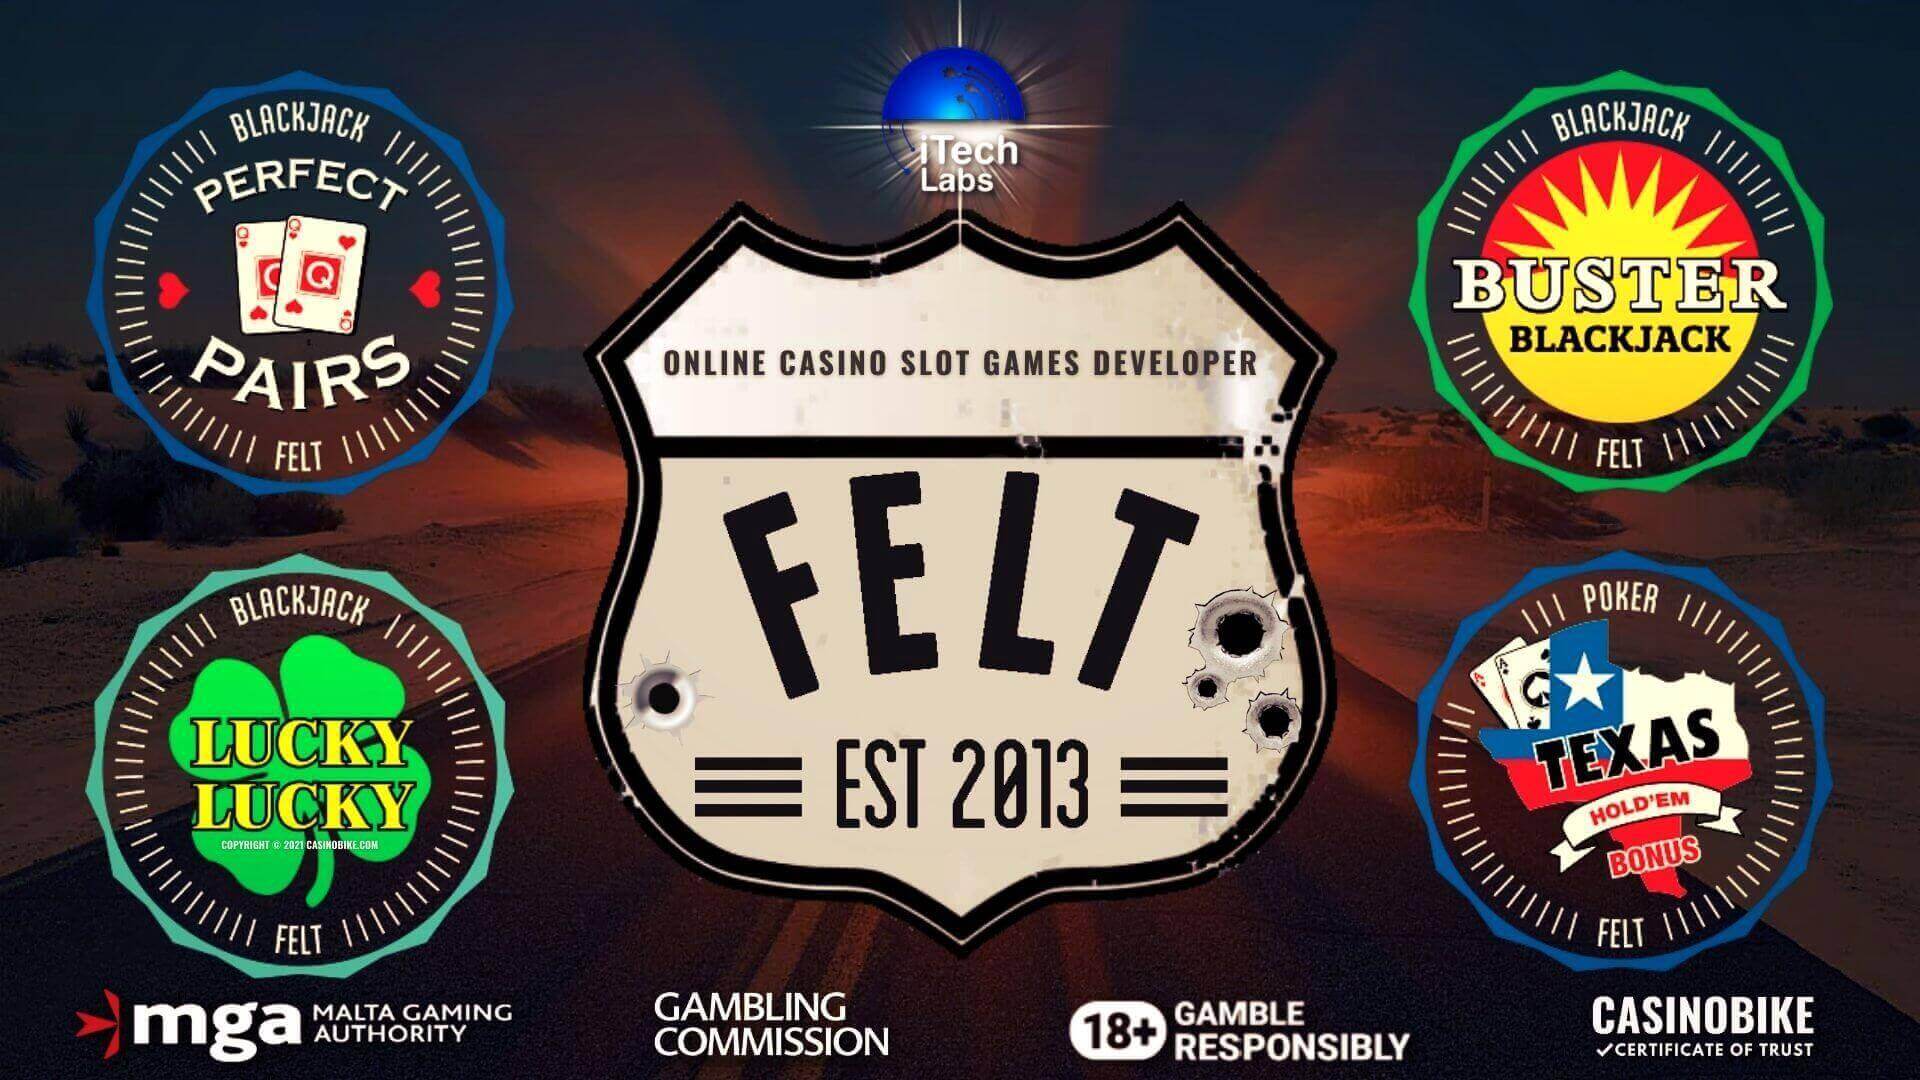 Felt Gaming Online Casino Slots Developer